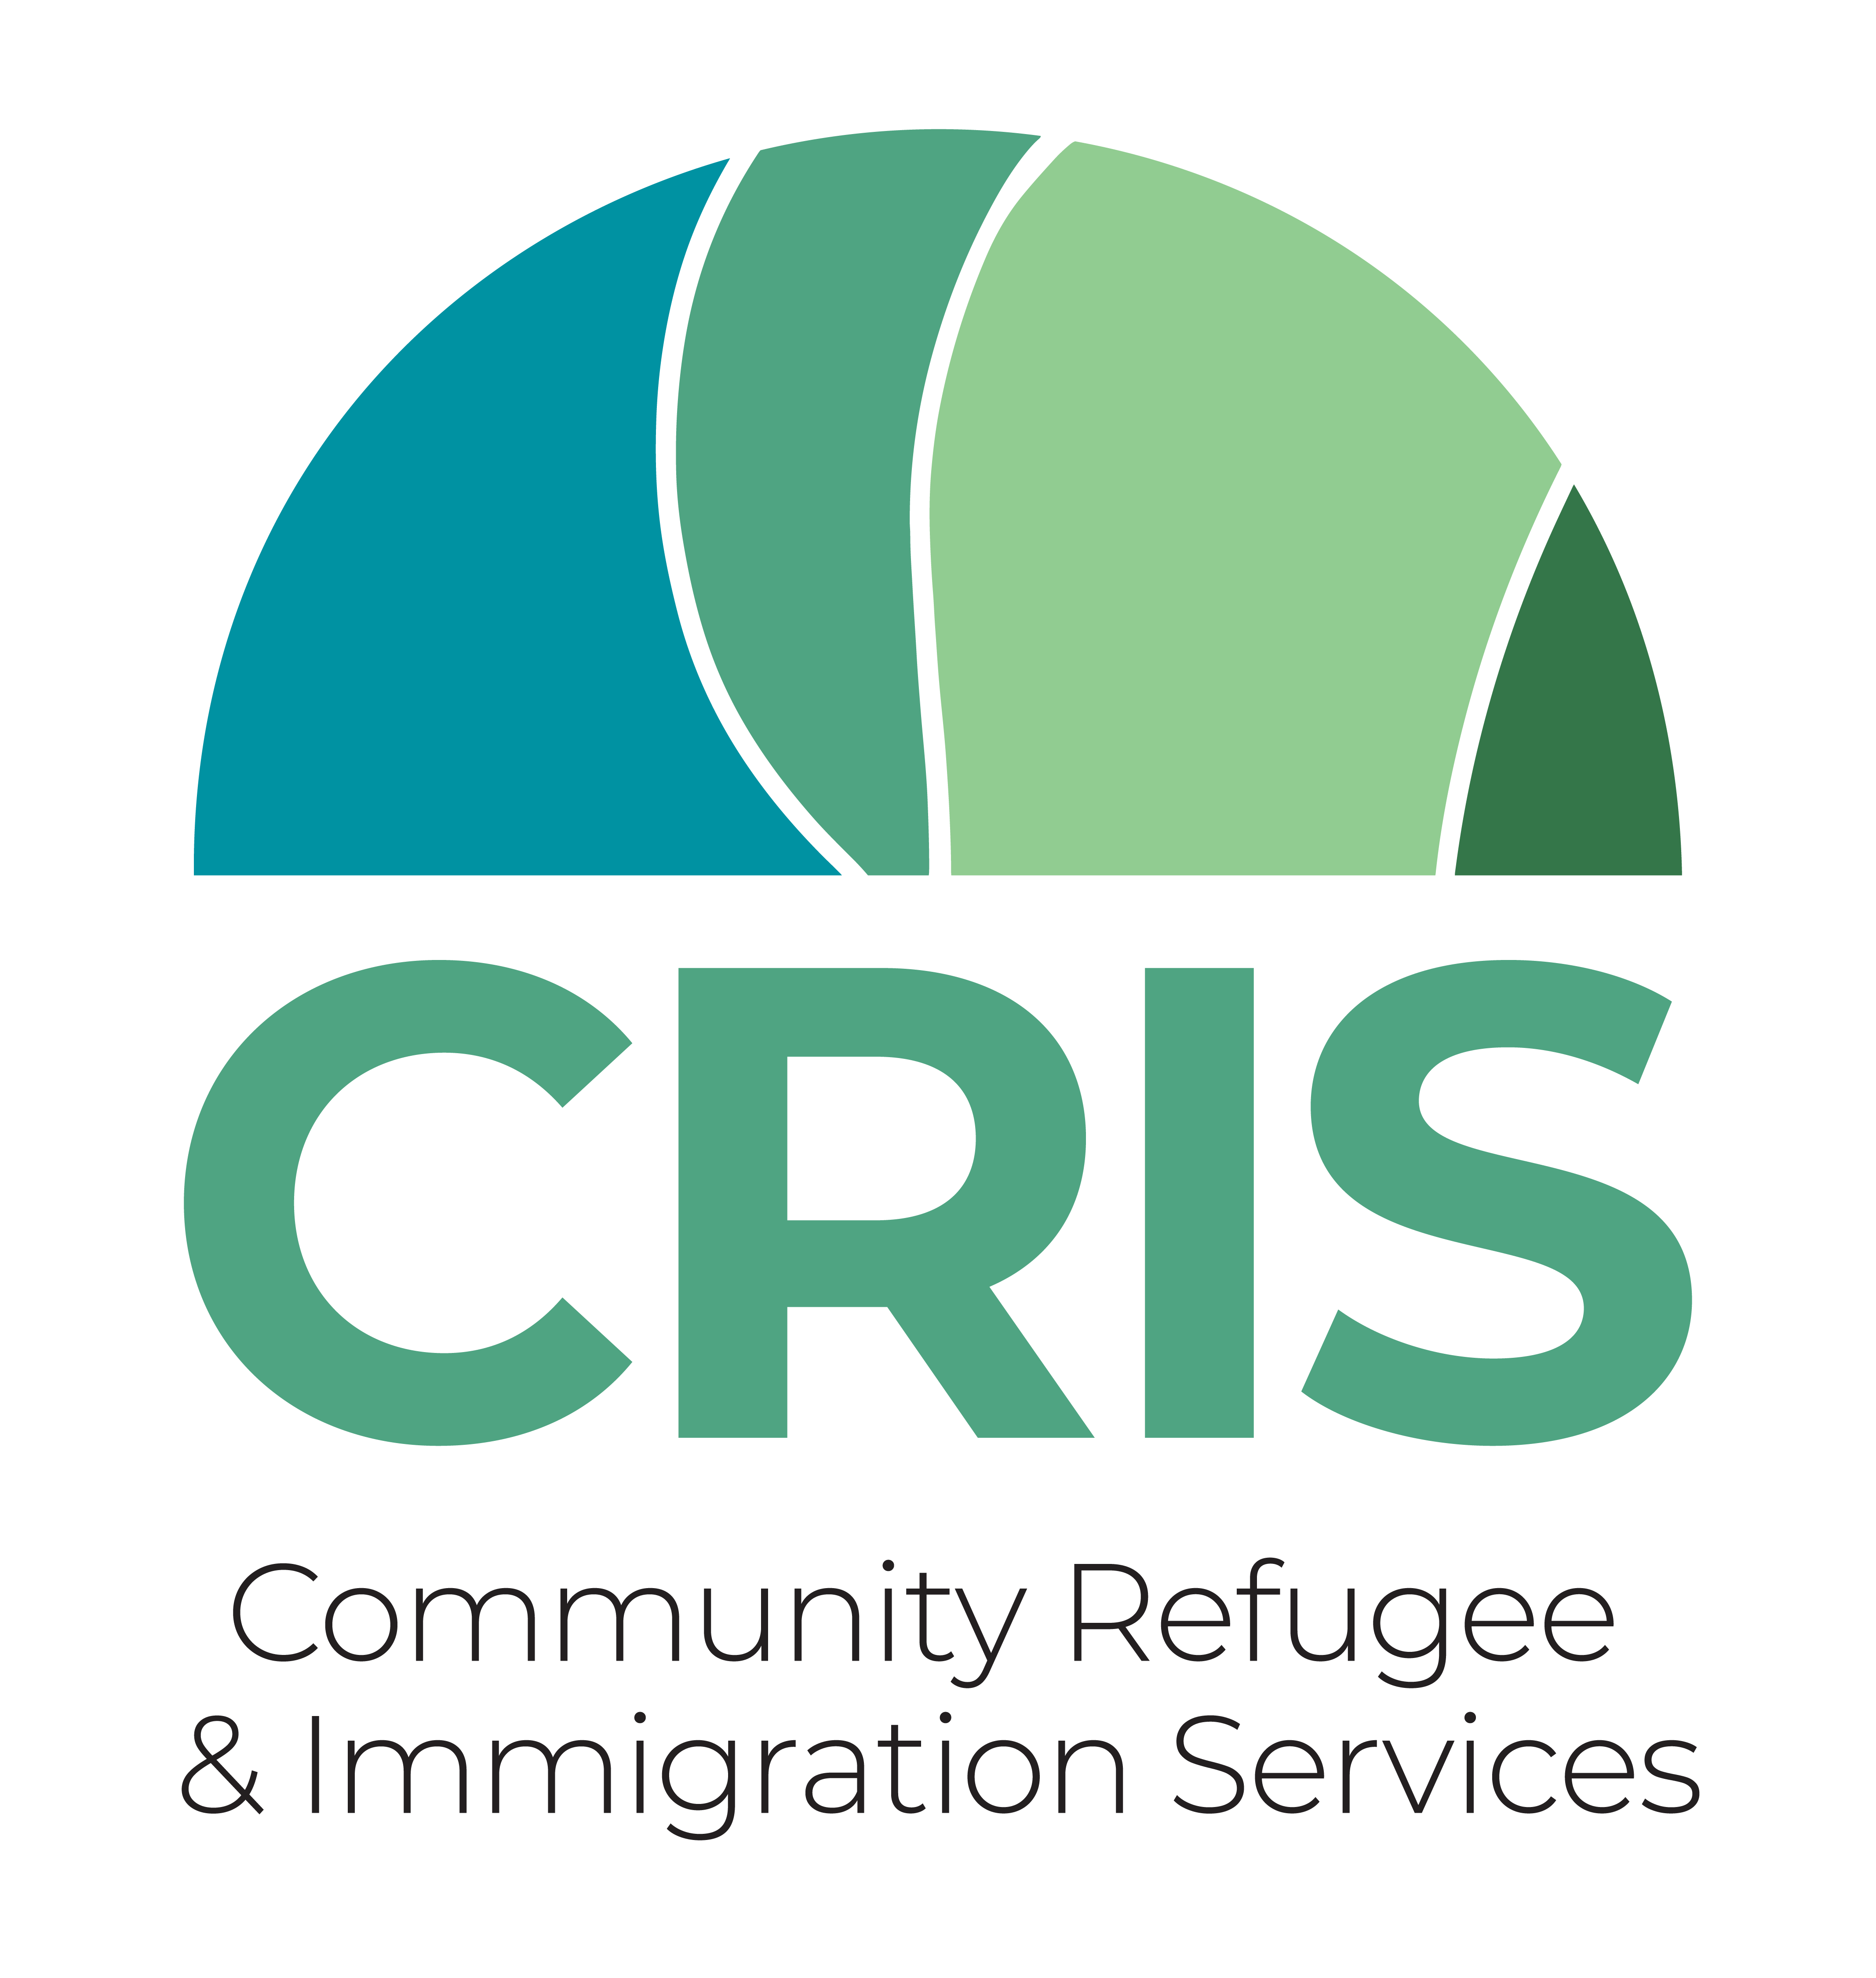 Community Refugee & Immigration Services Inc Logo.png (150 kb)